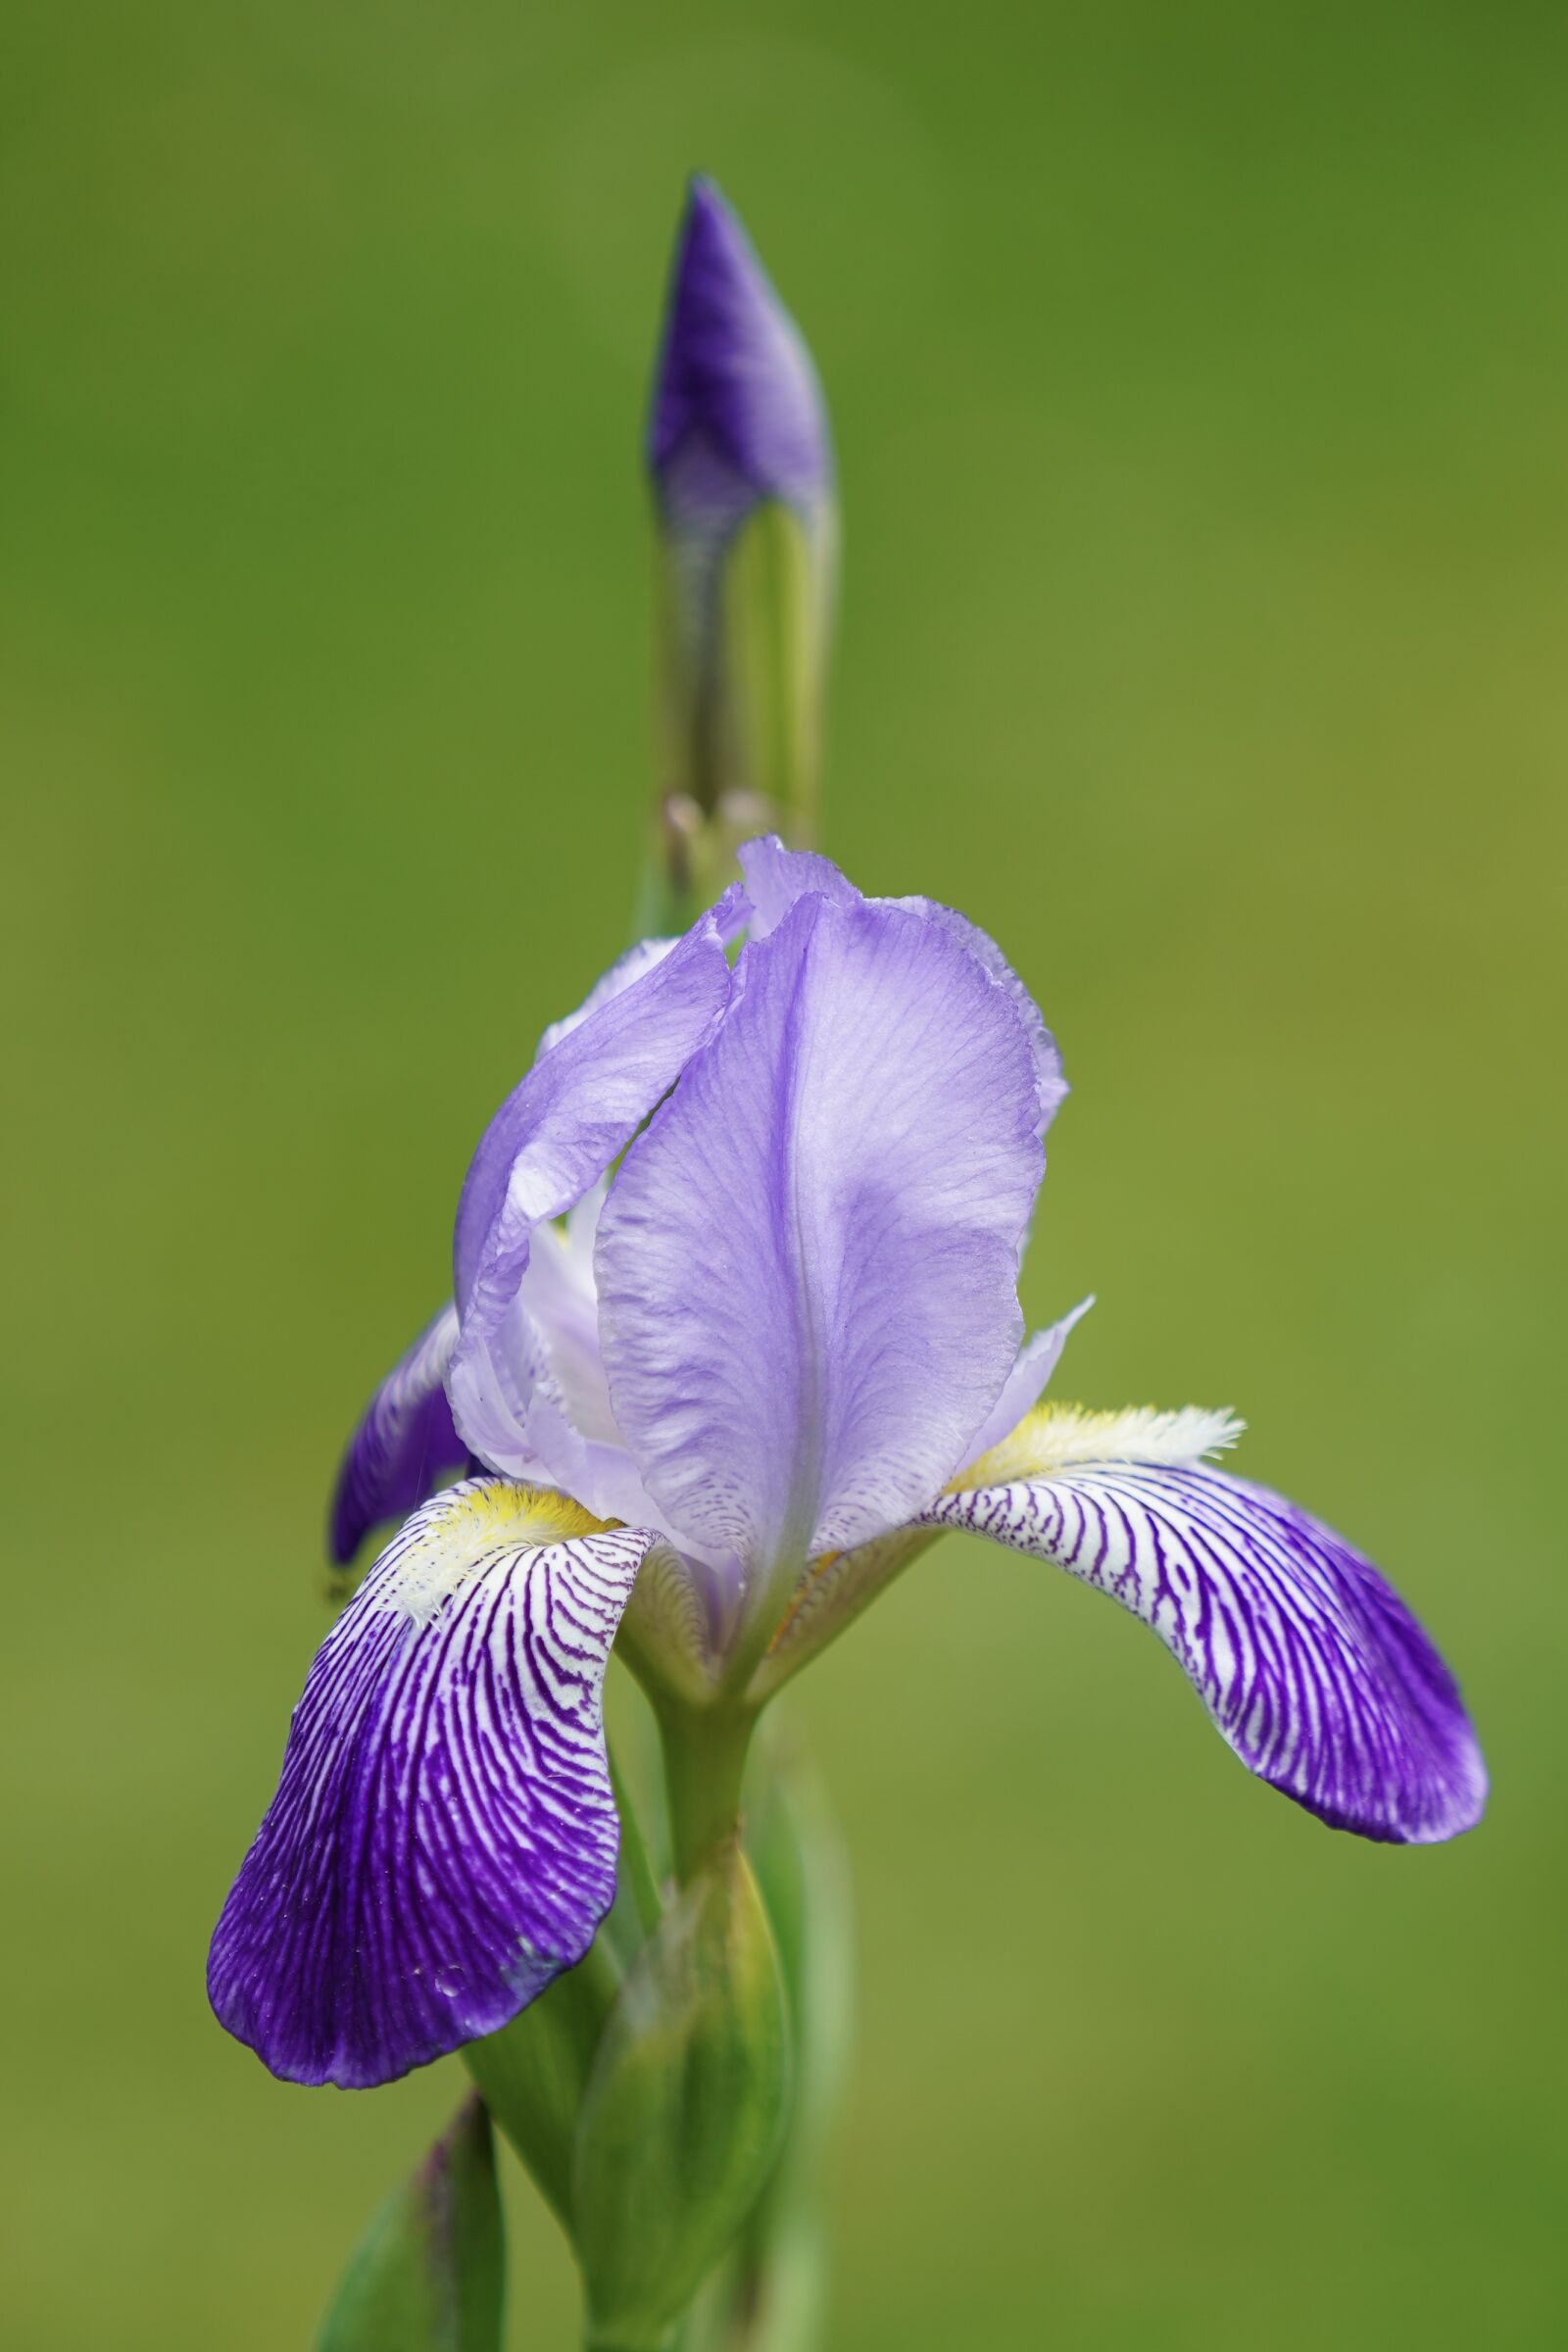 Sony FE 70-200mm F4 G OSS sample photo. Iris, flower, iris flower photography